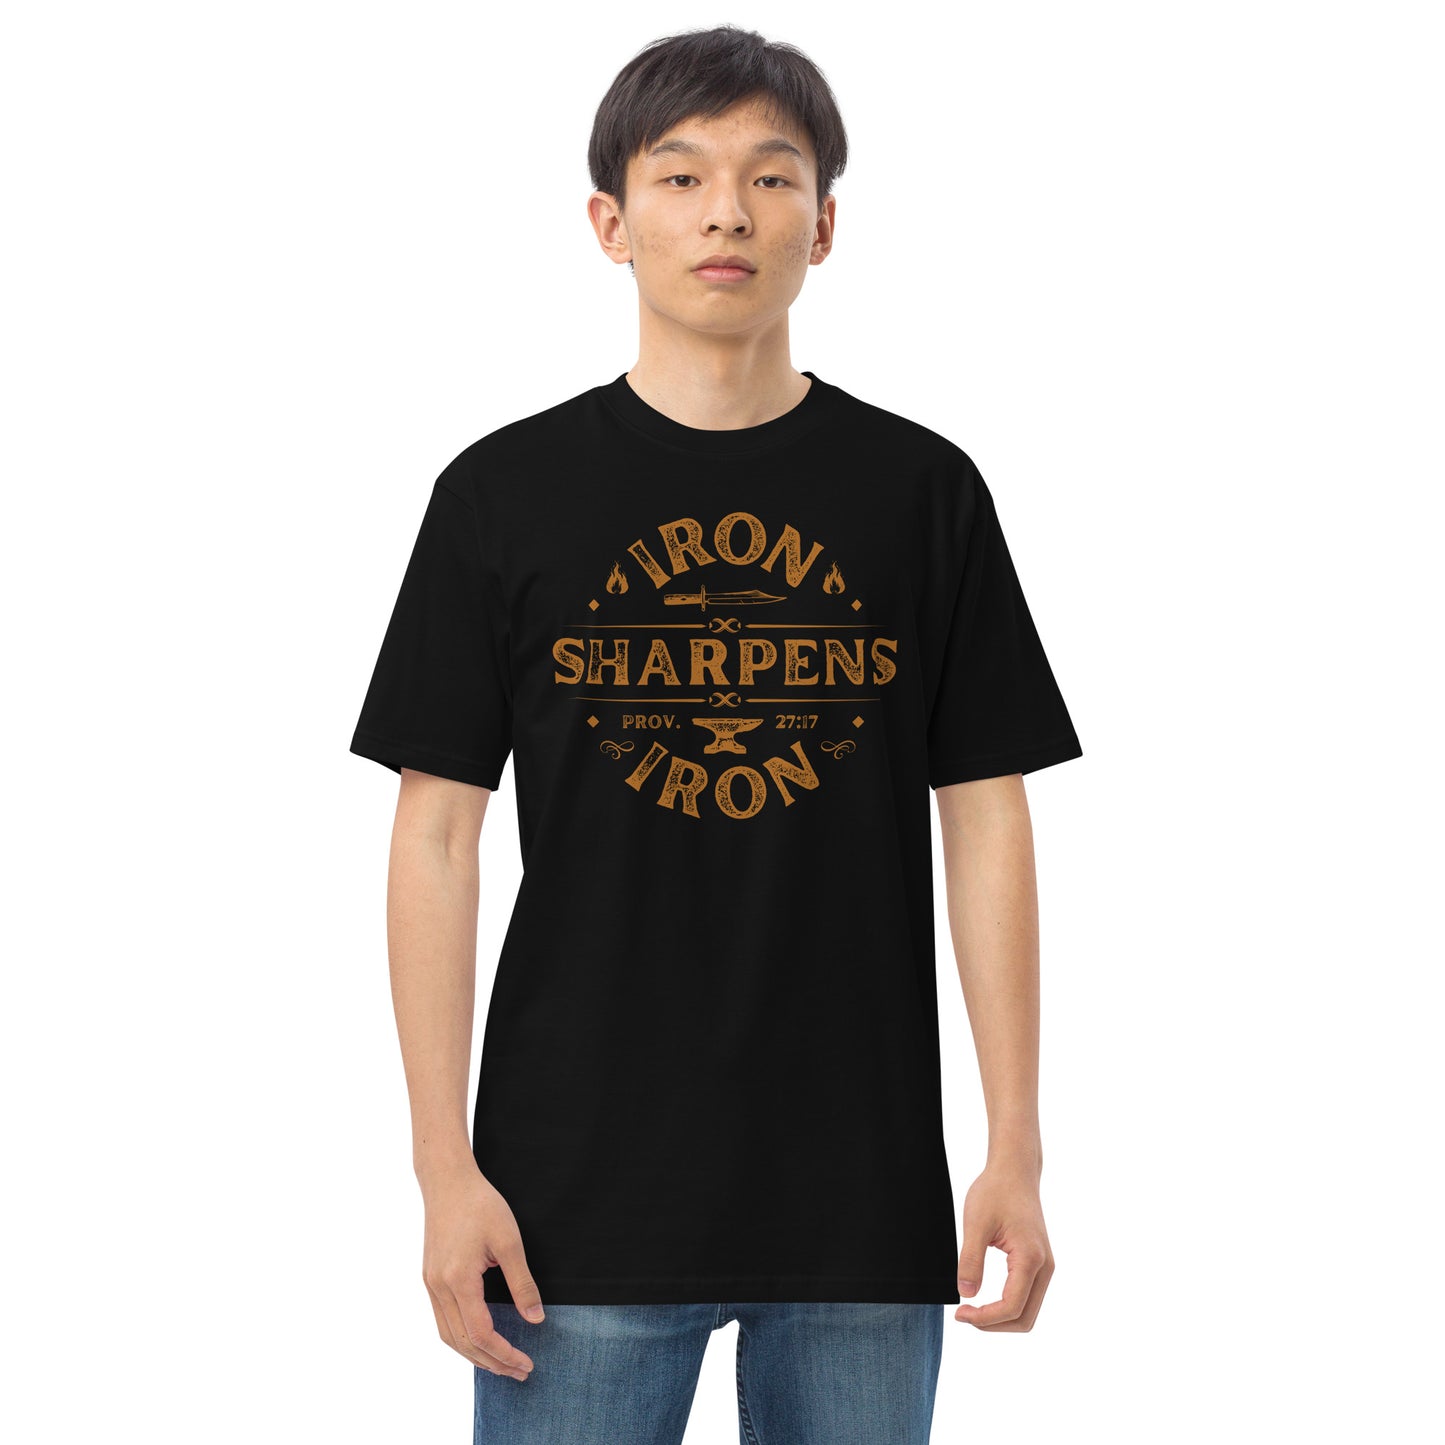 "Iron Sharpens Iron" Men’s premium heavyweight tee